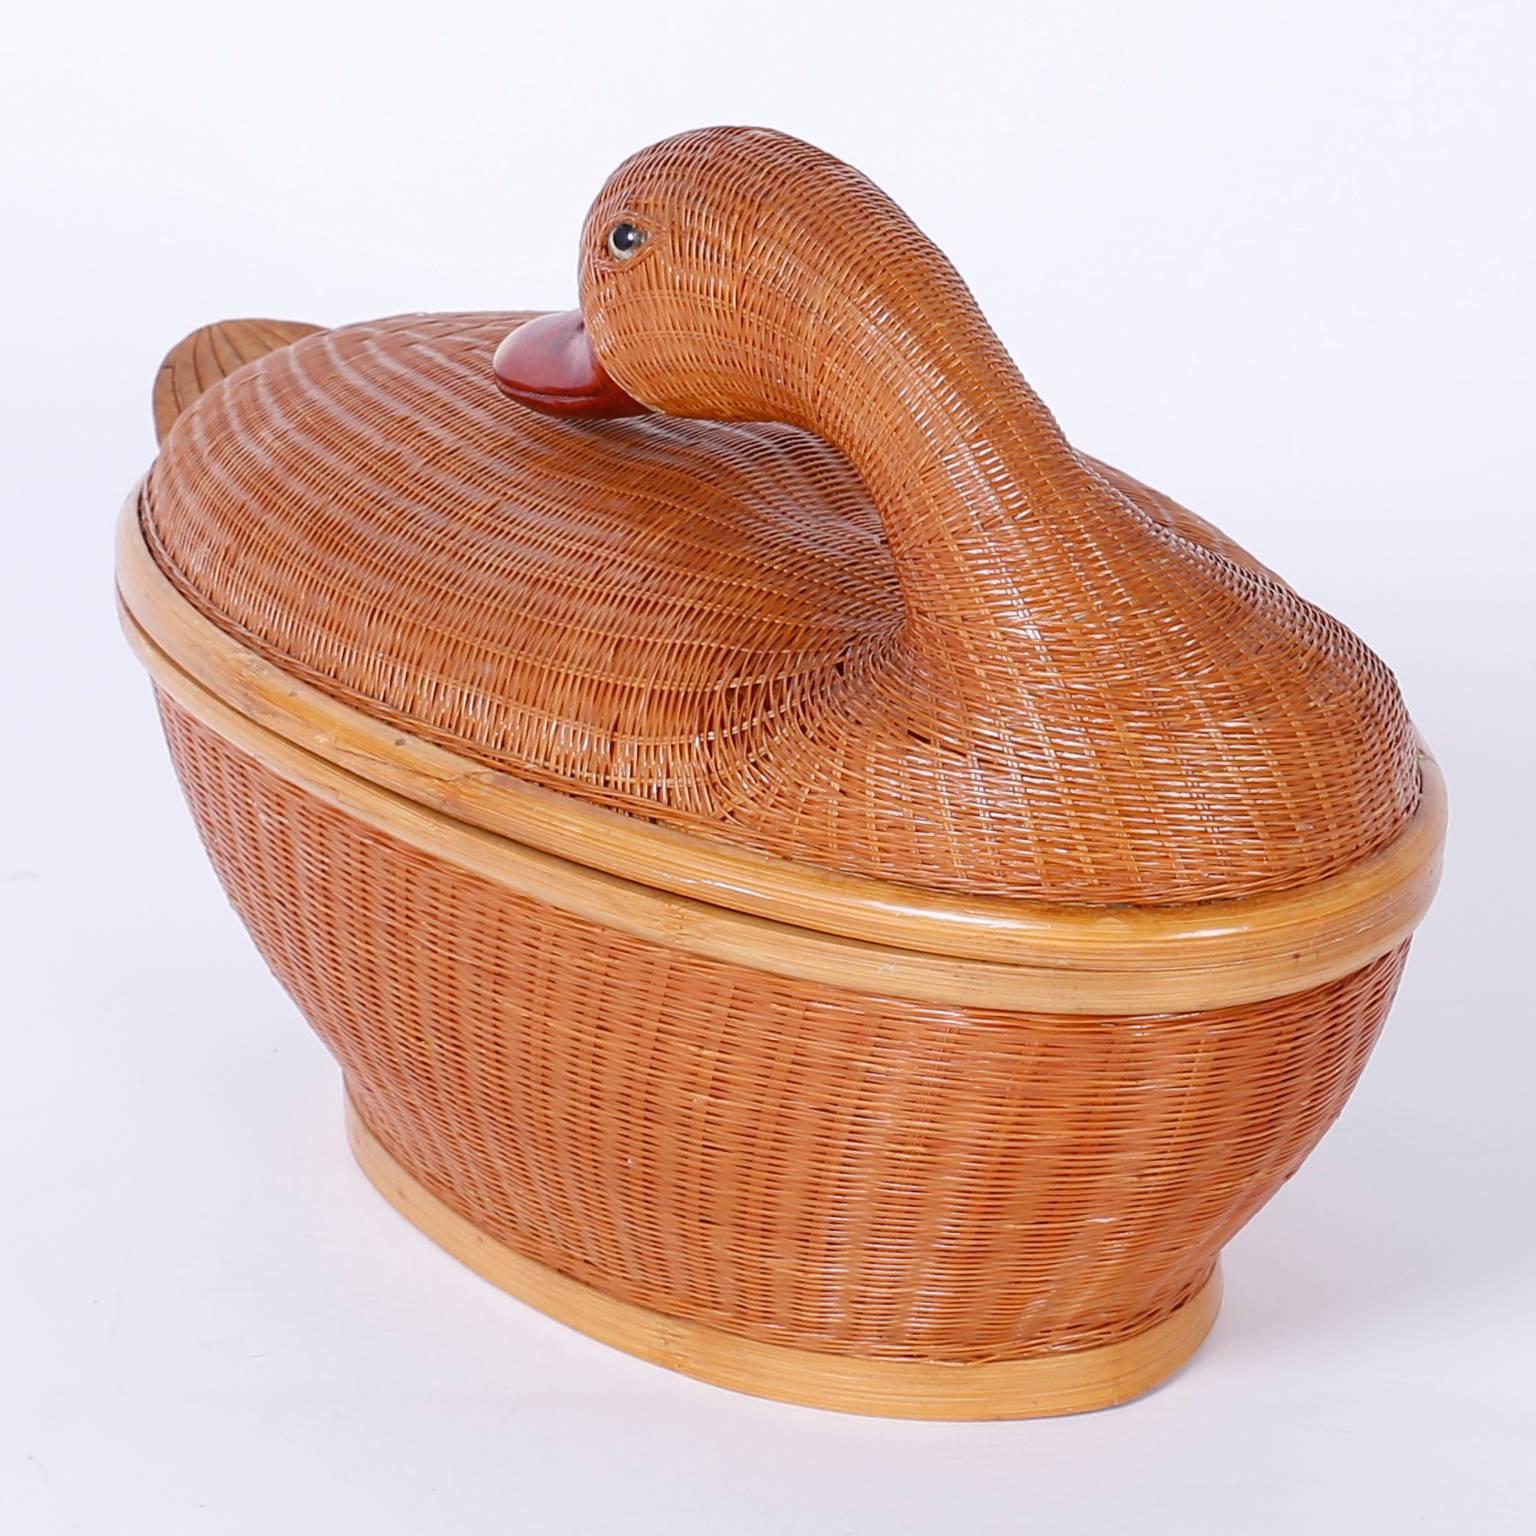 Folk Art Wicker Duck Box